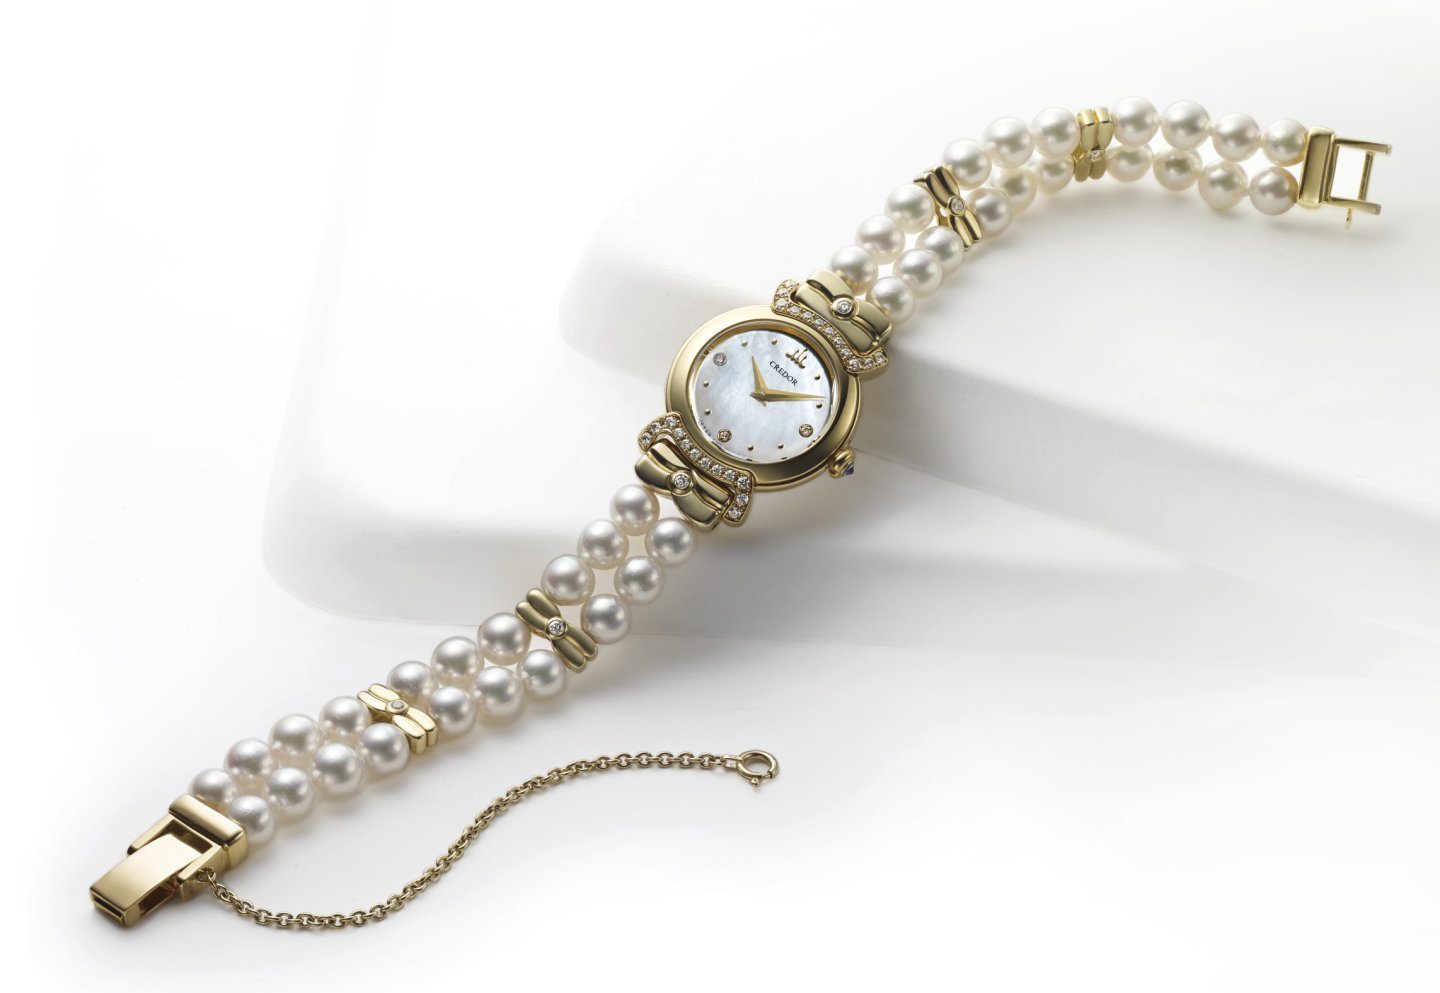 ＜クレドール＞「リネアルクス」シリーズより、最上級のアコヤ真珠を採用したパールブレスレットモデルを発売